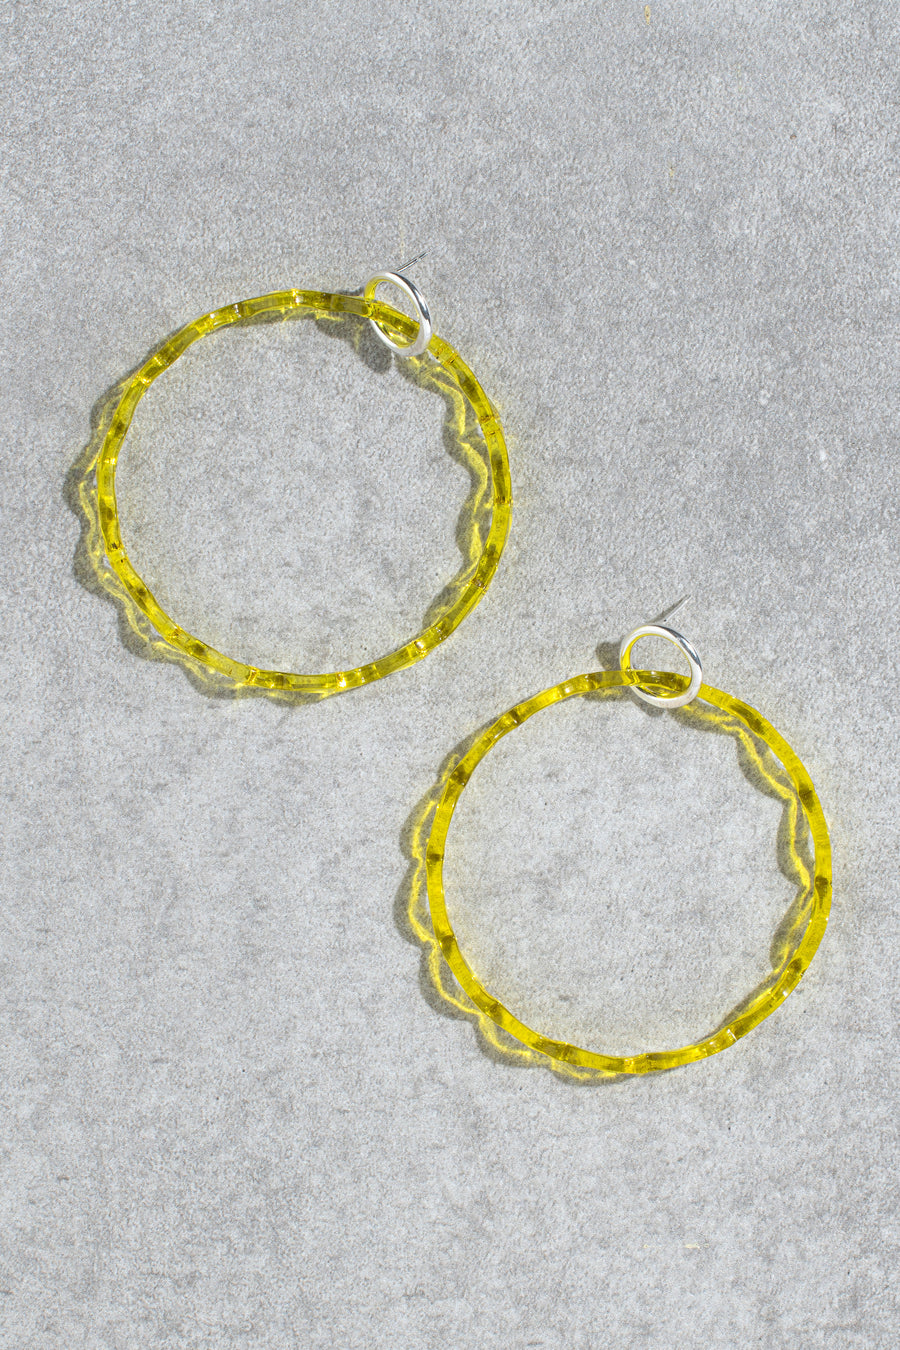 Amy earrings - yellow chevron